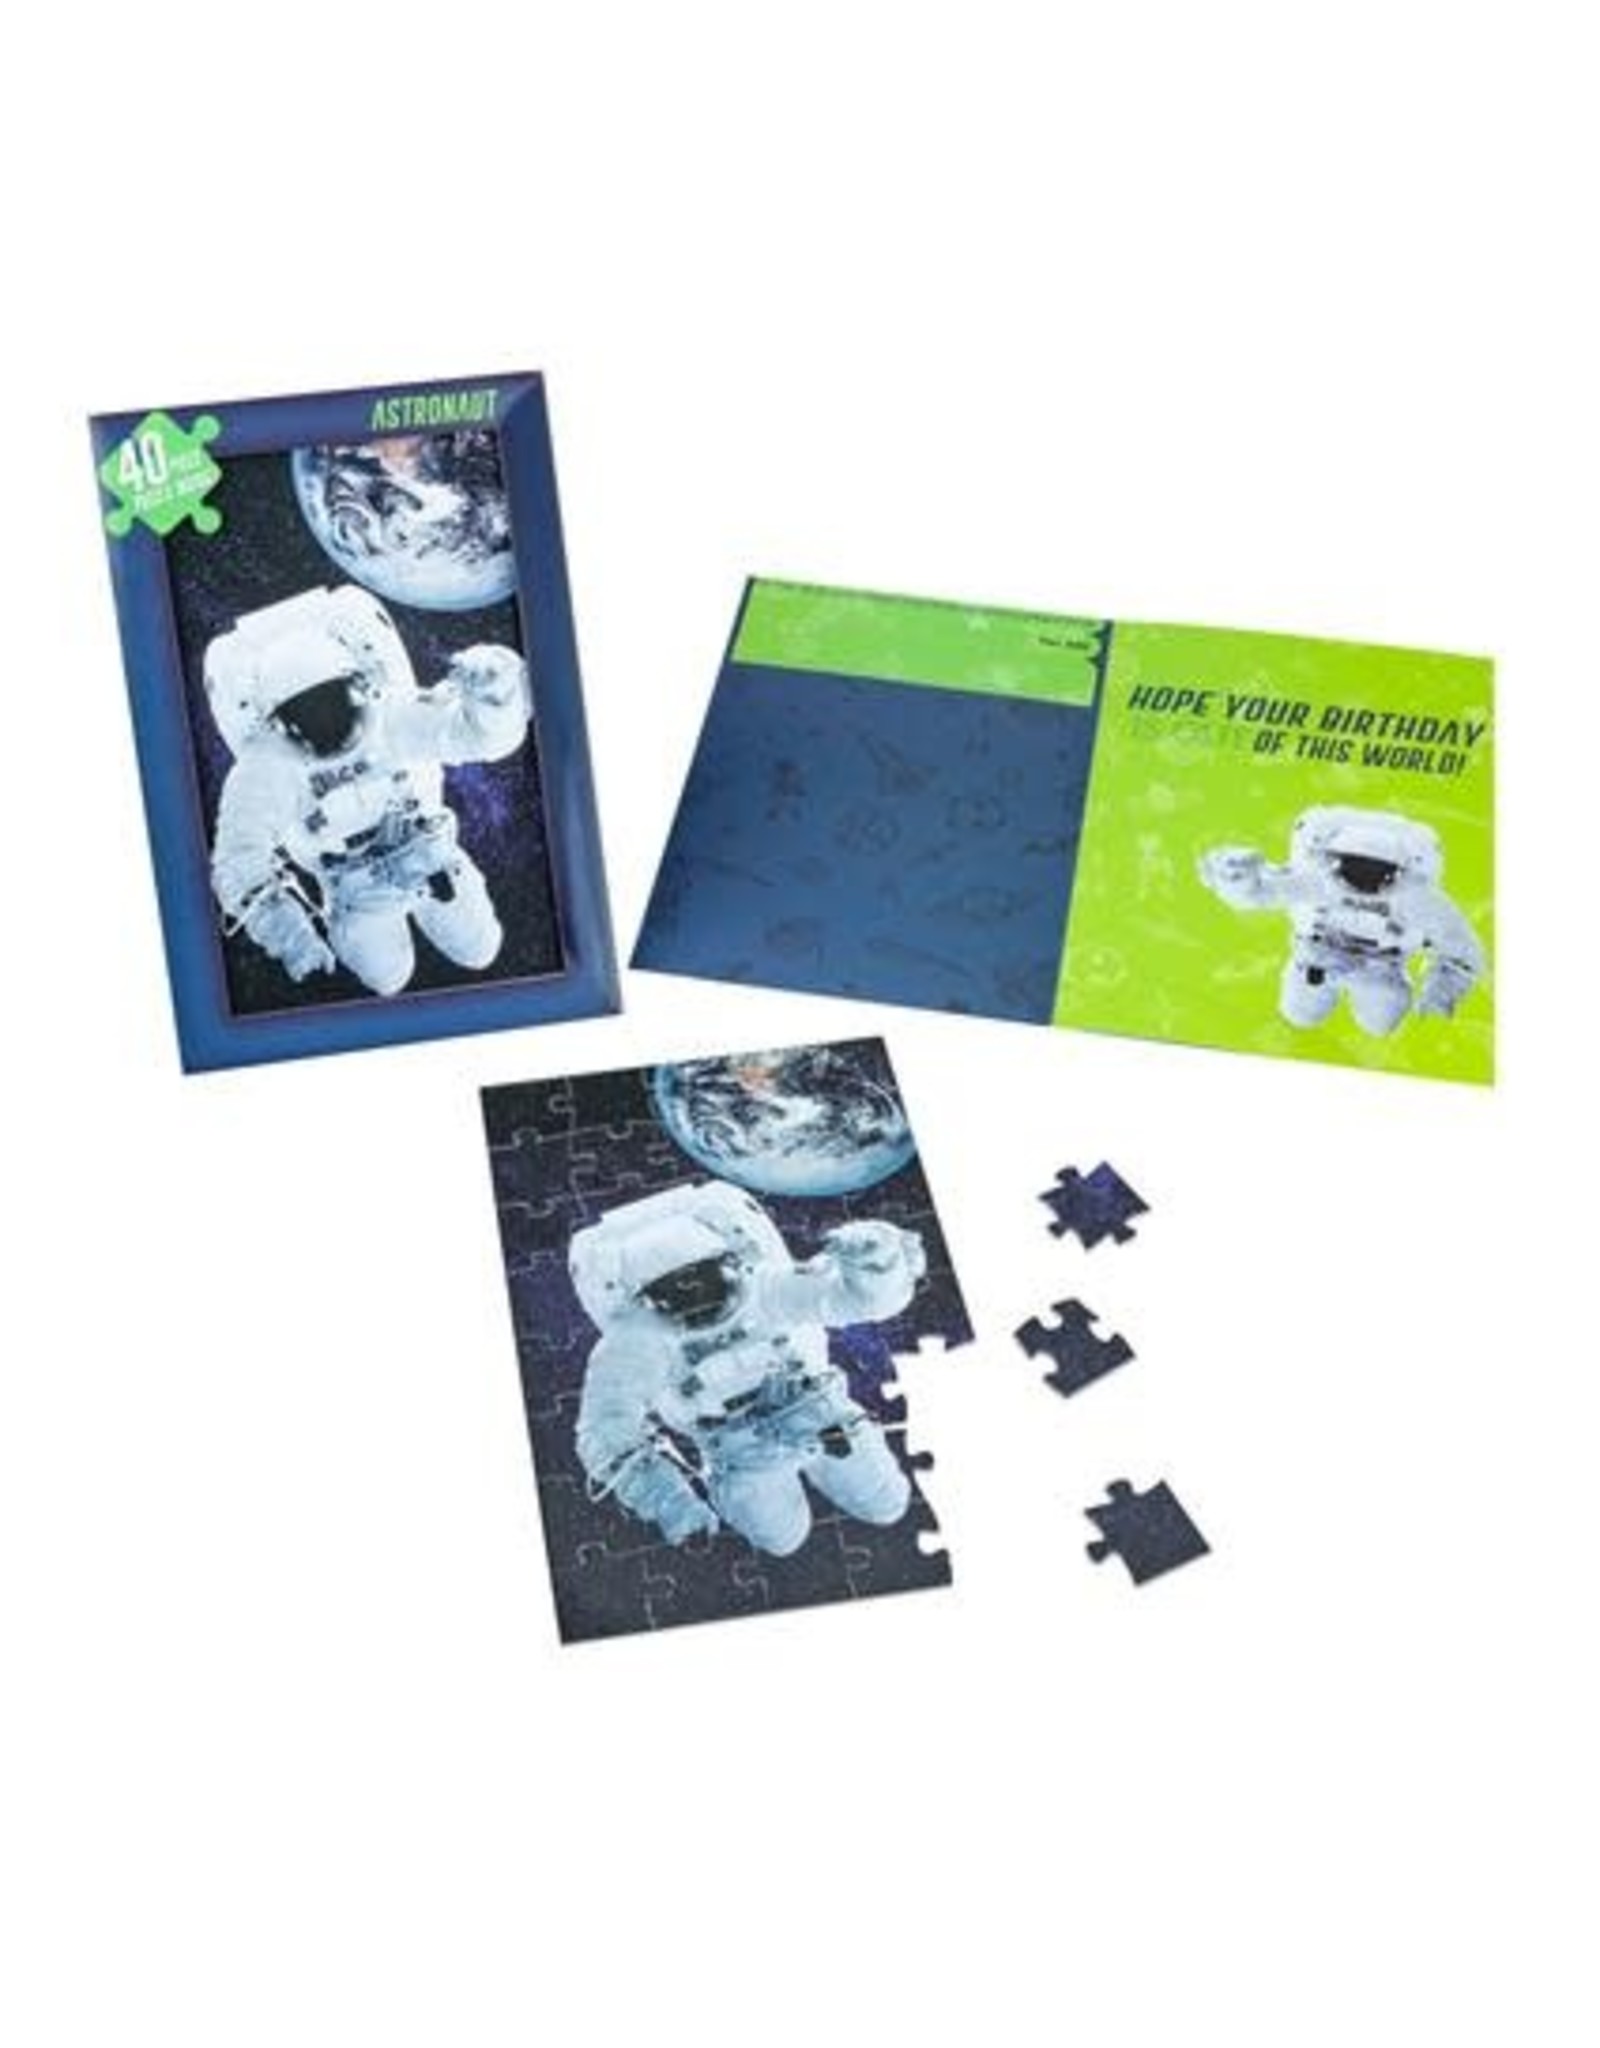 The Astronaut Jigsaw Card